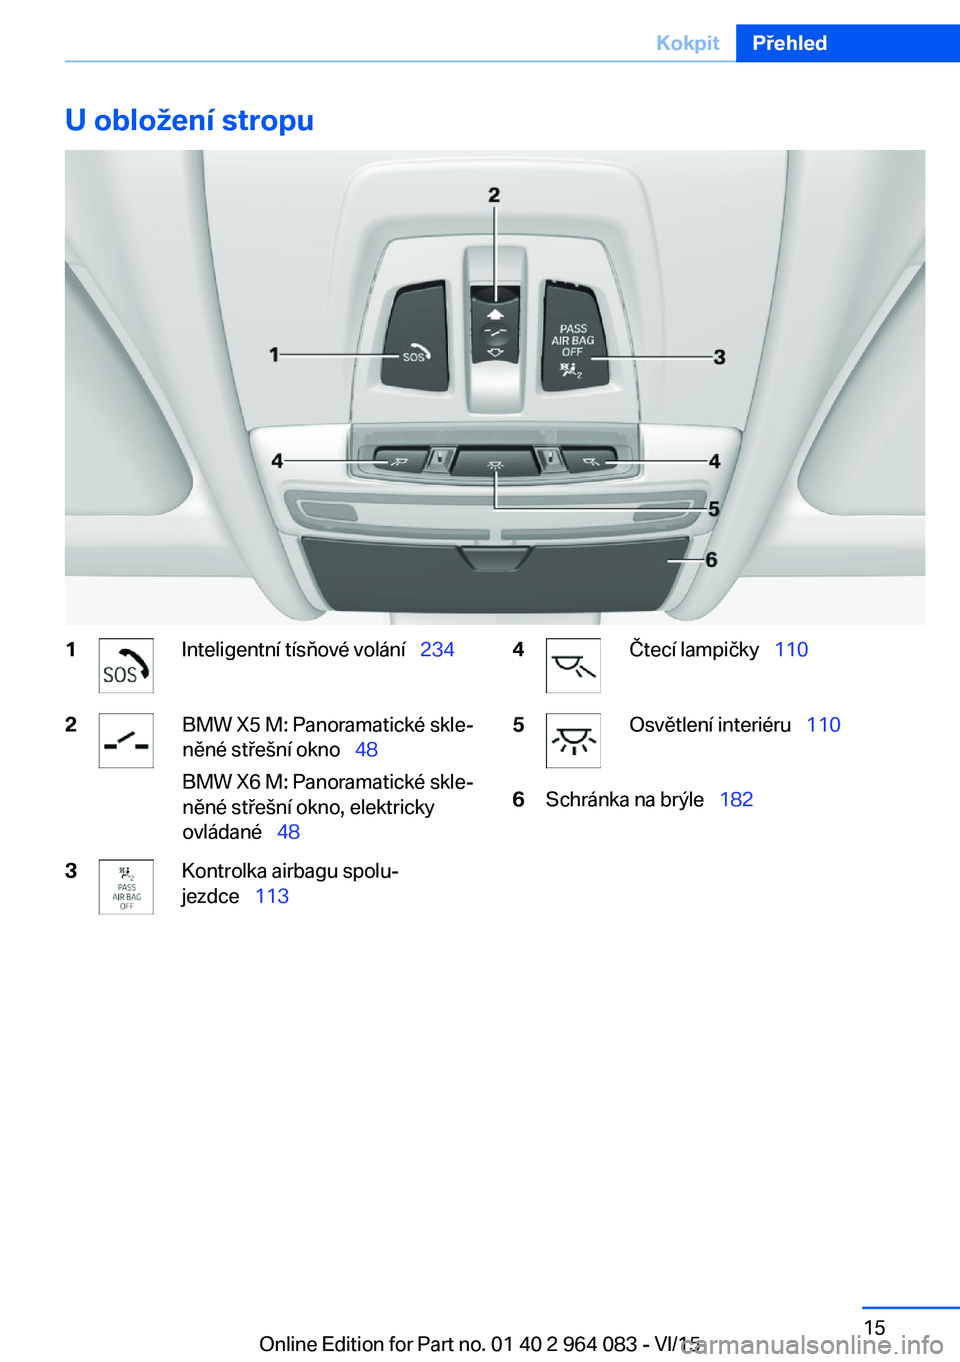 BMW X5 M 2016  Návod na použití (in Czech) U obložení stropu1Inteligentní tísňové volání  2342BMW X5 M: Panoramatické skle‐
něné střešní okno   48
BMW X6 M: Panoramatické skle‐
něné střešní okno, elektricky
ovl�